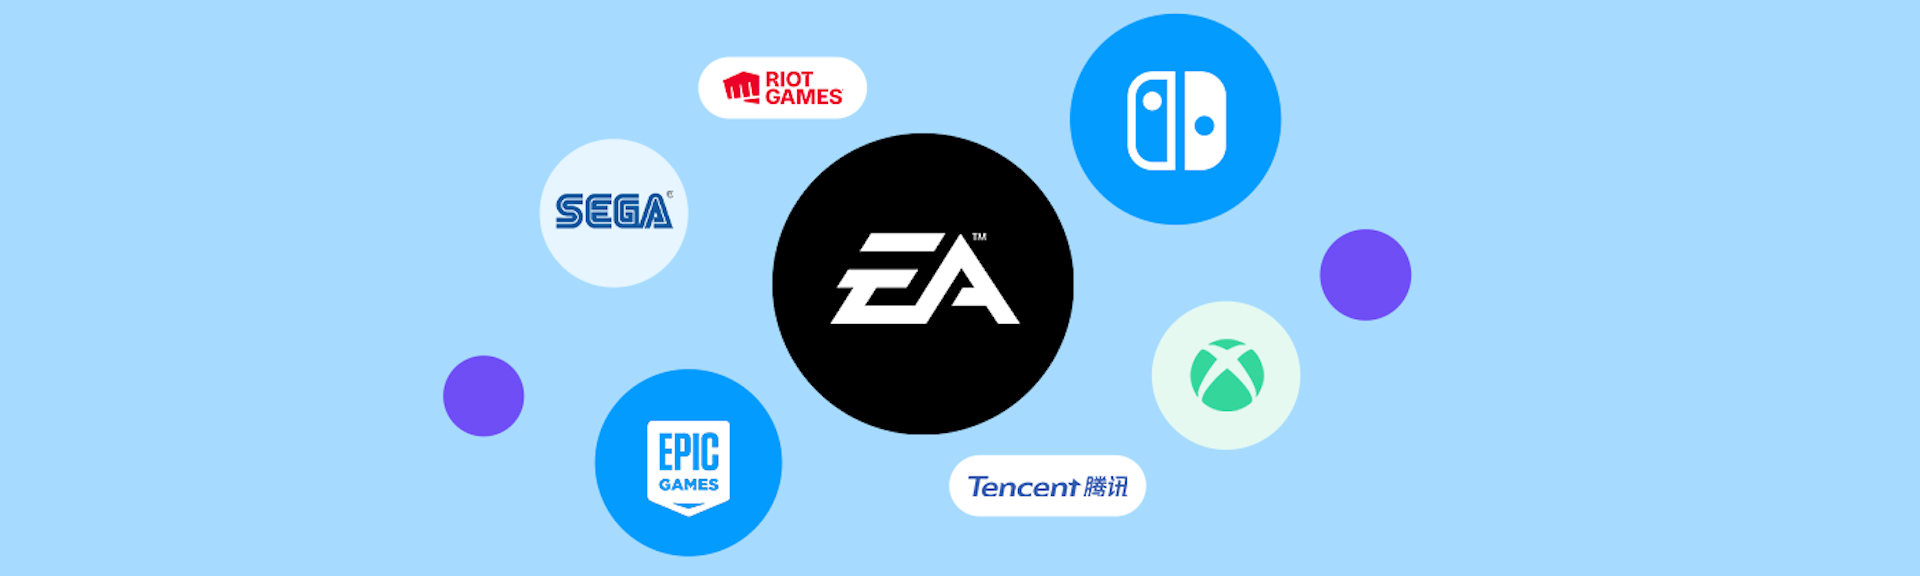 Las 10 empresas de videojuegos que revolucionarán el mundo gamer